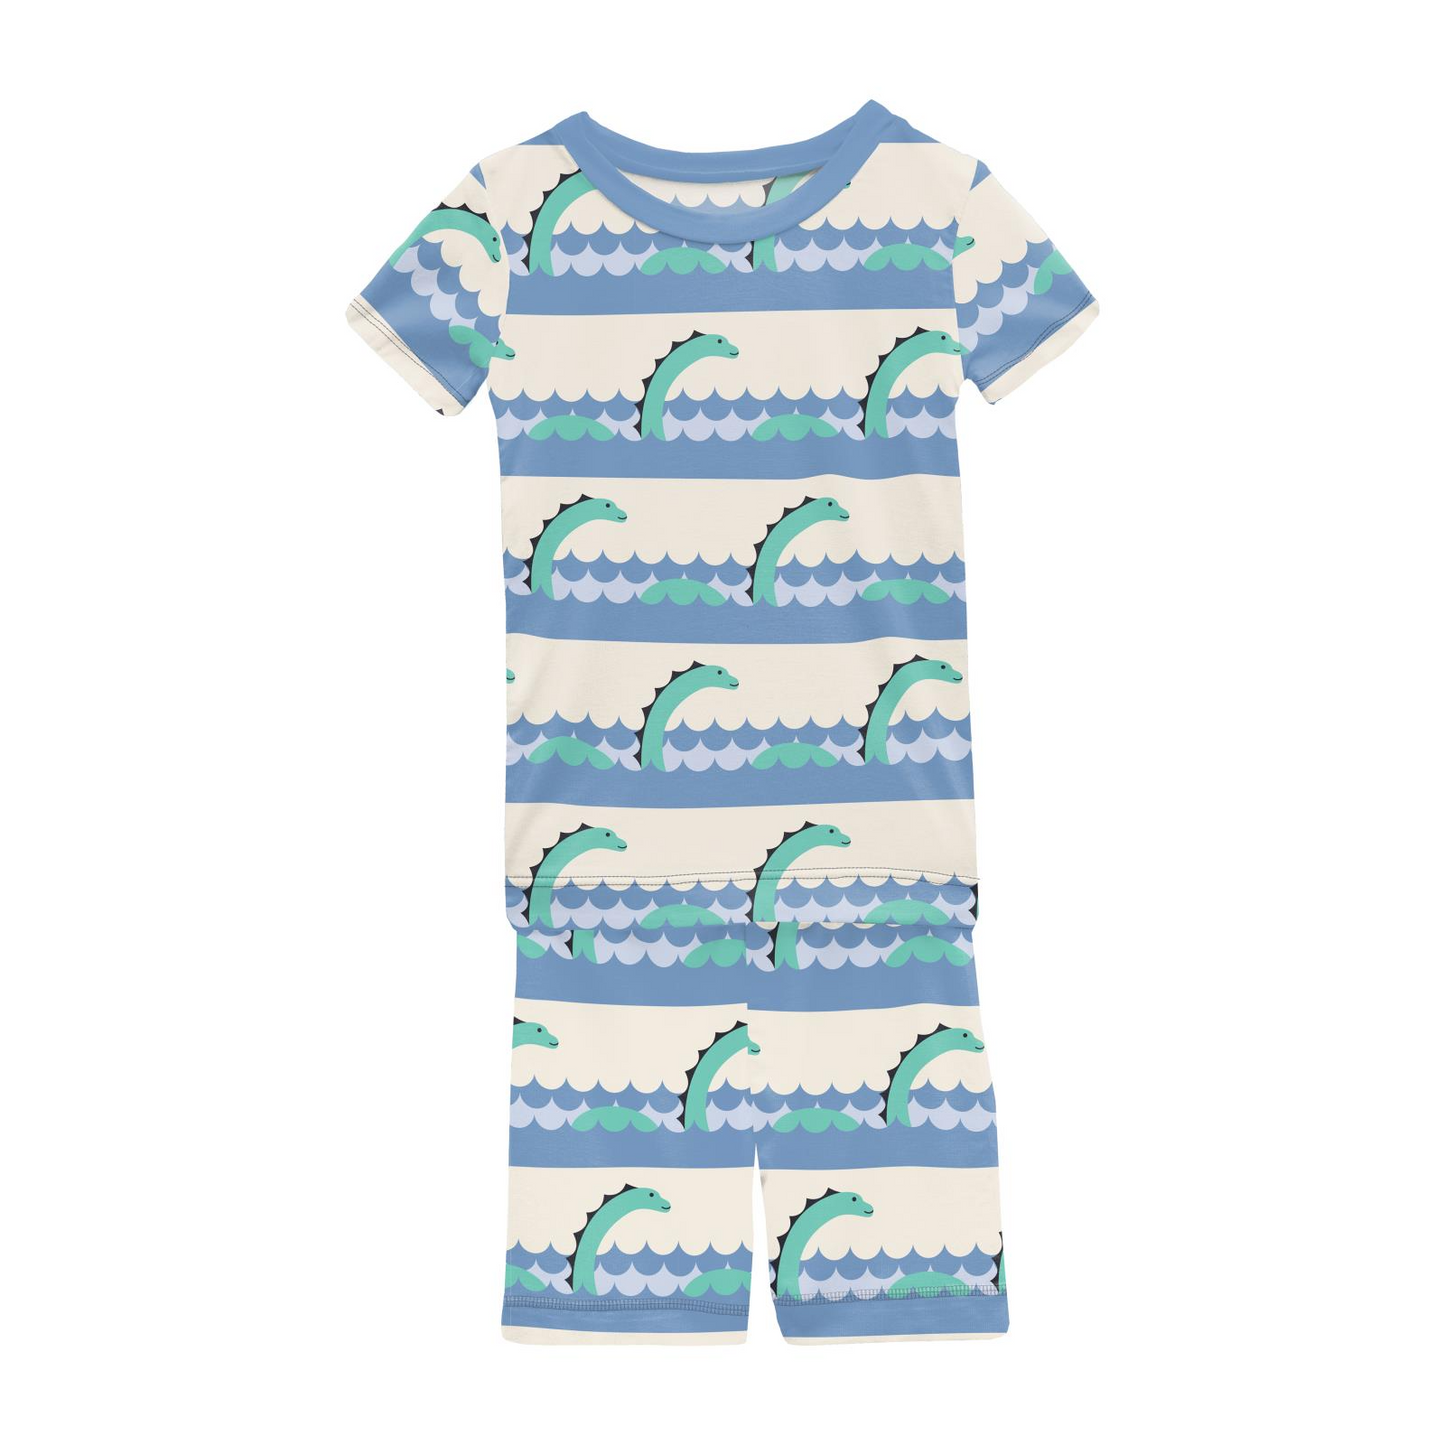 Bamboo Print Short Sleeve Pajama Set with Shorts: Natural Sea Monster